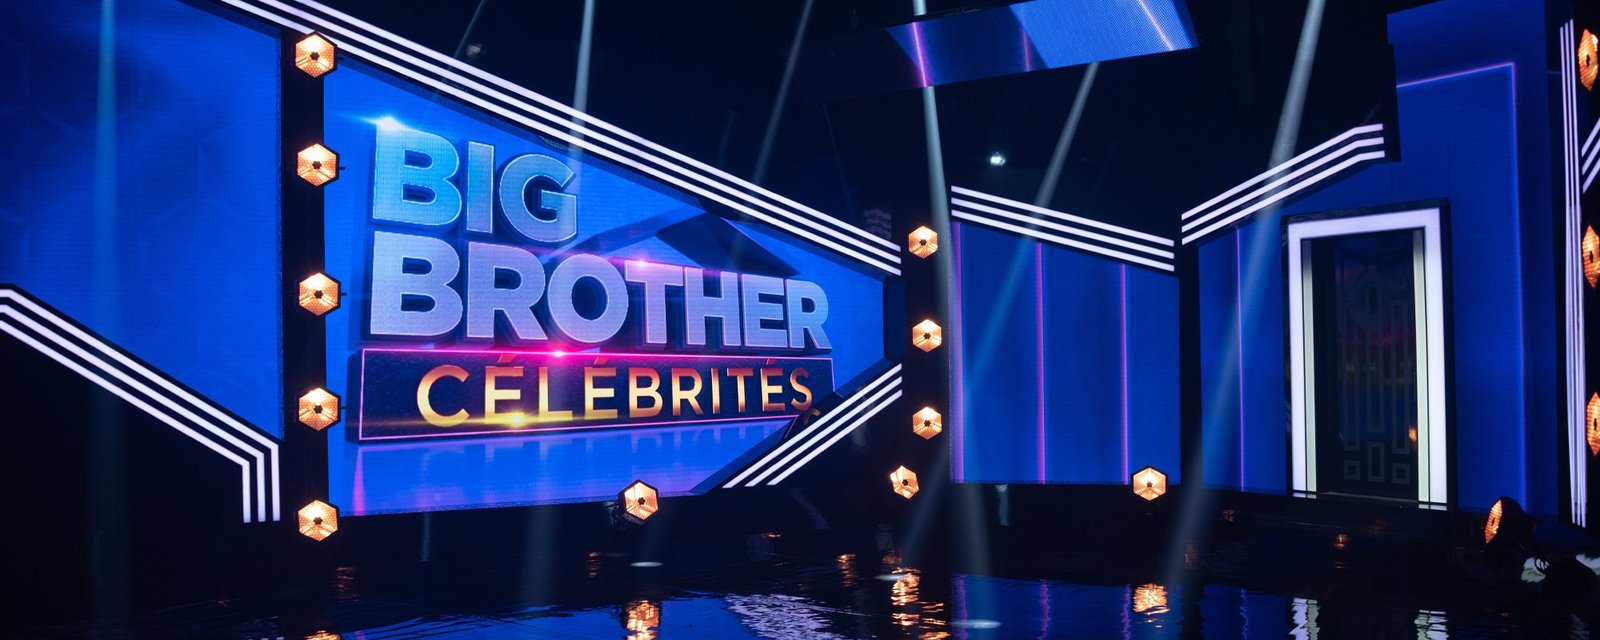 Voici 16 vedettes qui pourraient participer à la prochaine saison de Big Brother Célébrités 